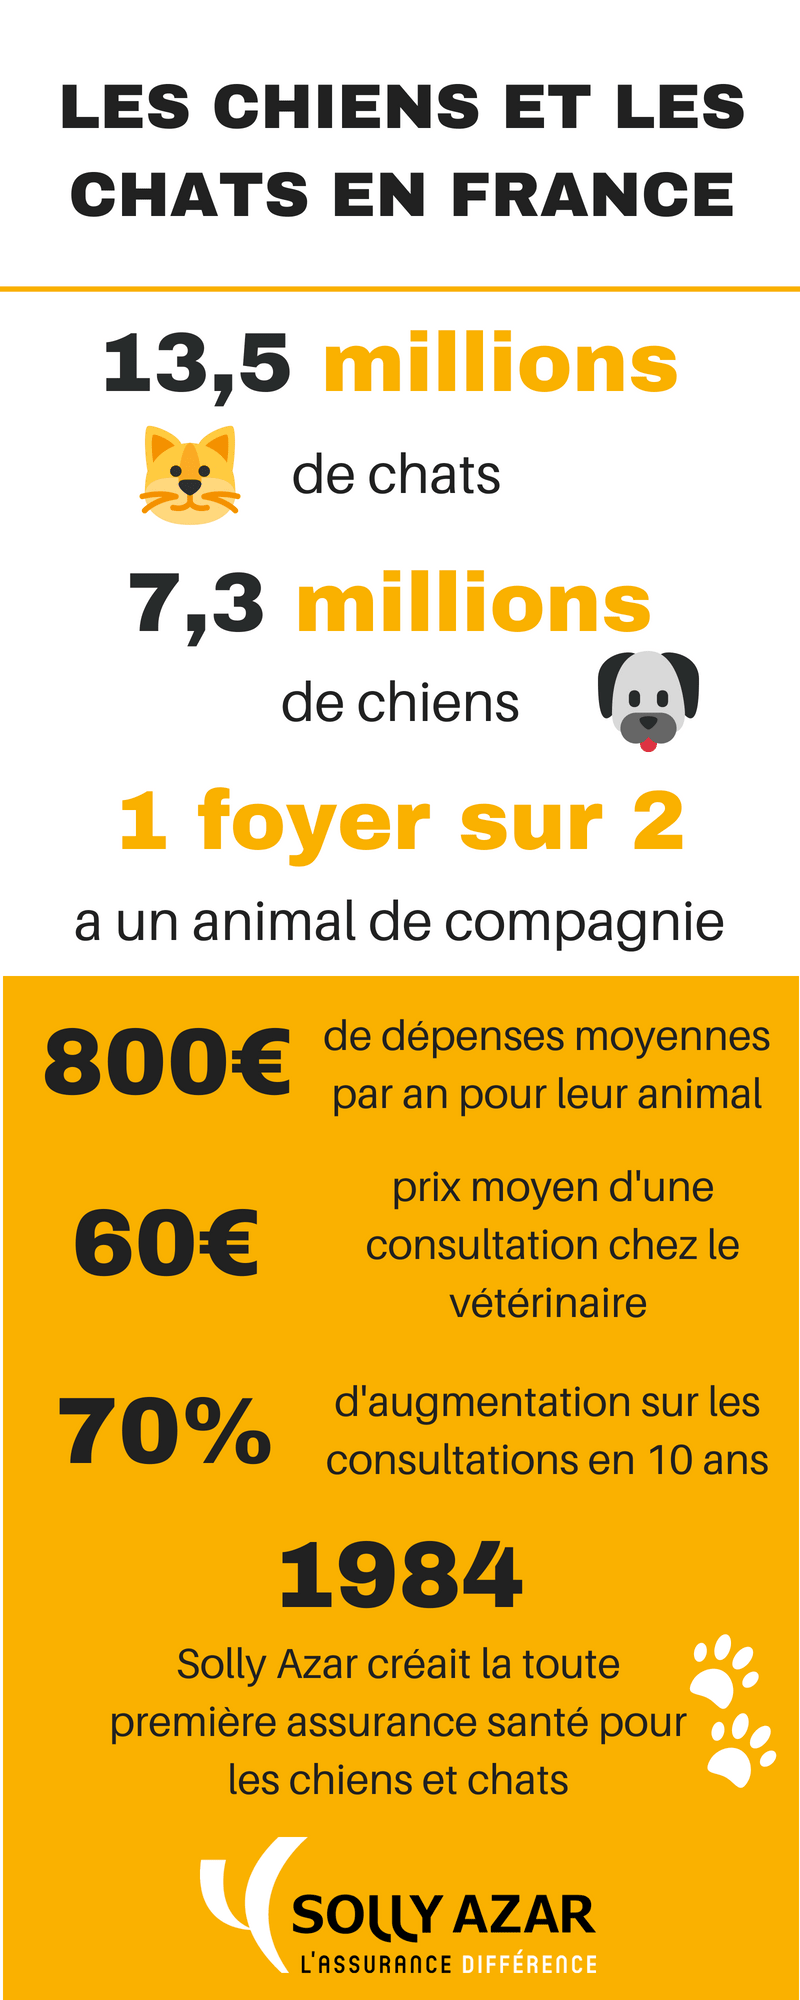 Combien y a-t-il de chiens et de chats en France ? Combien dépense-t-on pour nos animaux par an ? Toutes les réponses dans notre infographie sur l’univers des chiens et chats en France. 